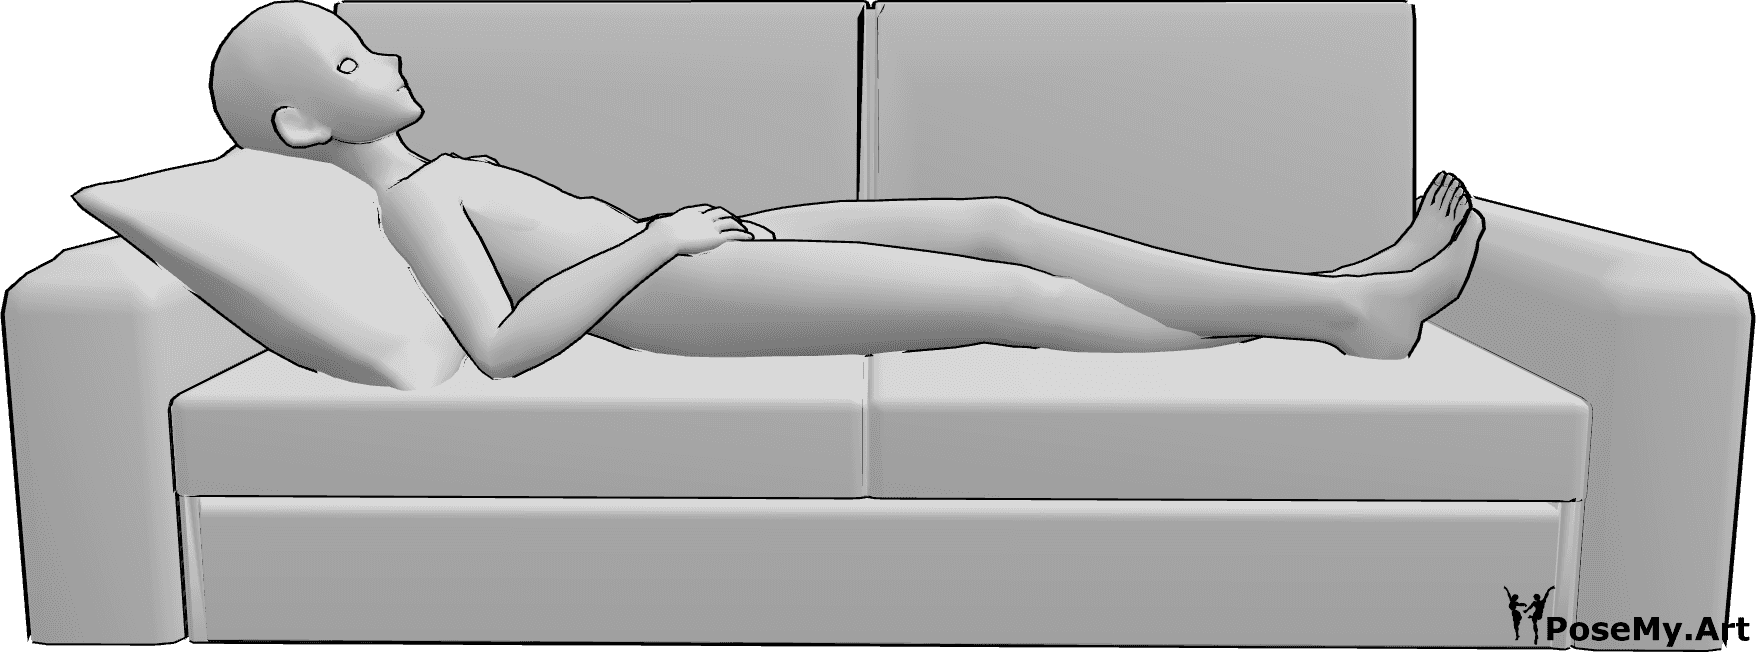 Riferimento alle pose- Anime maschio in posa distesa - Il maschio di Anime è comodamente sdraiato sul divano con le gambe incrociate e lo sguardo rivolto verso l'alto.